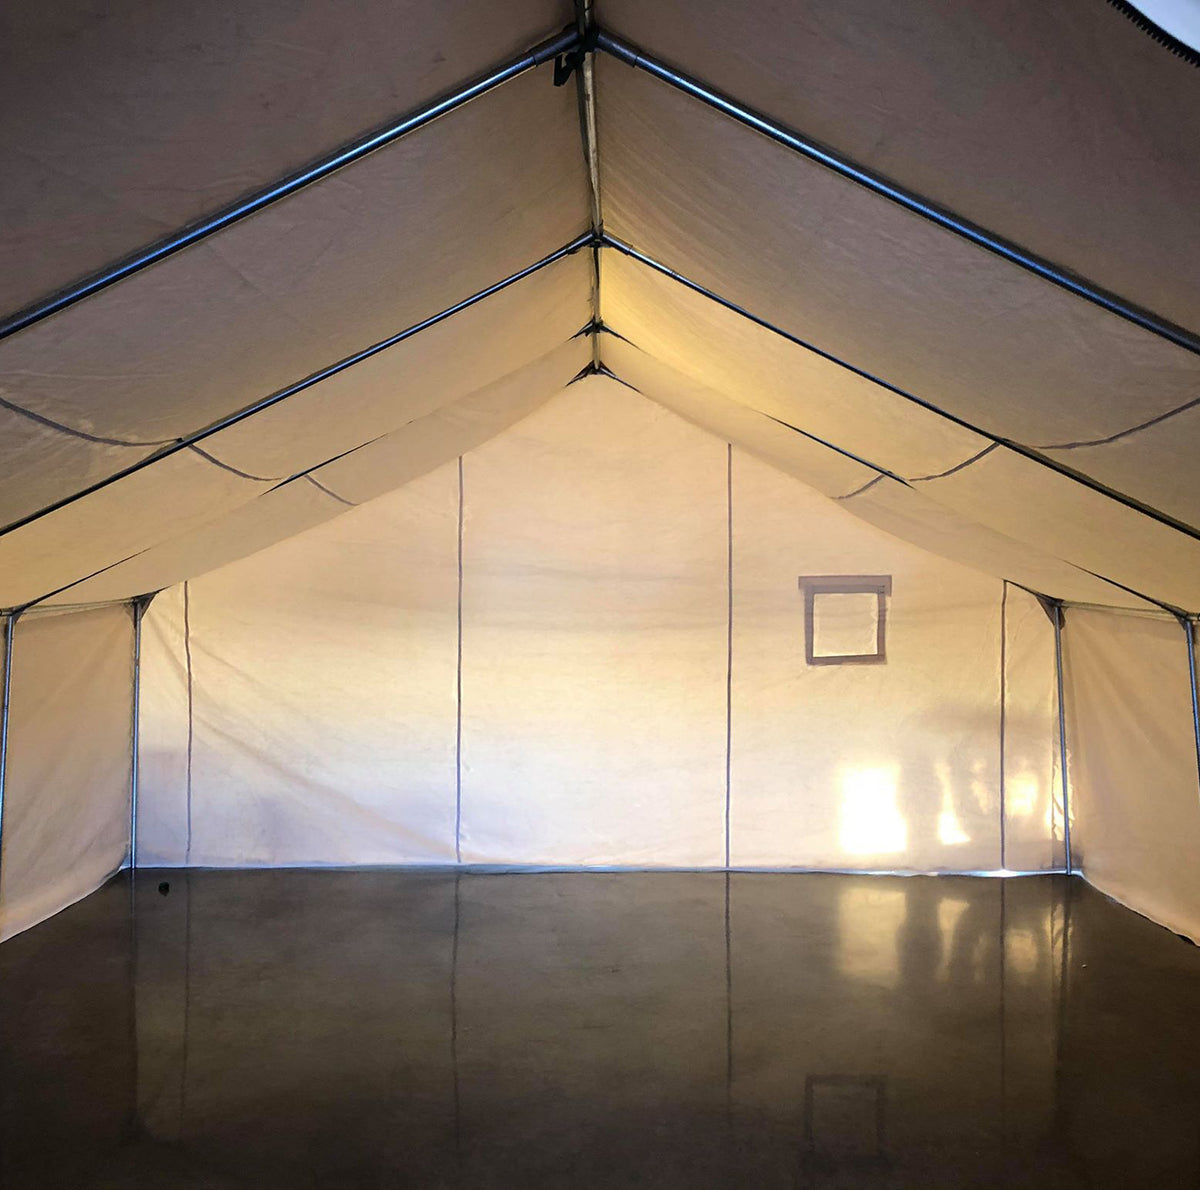 La tente prospecteur 14x16 – Imago structures